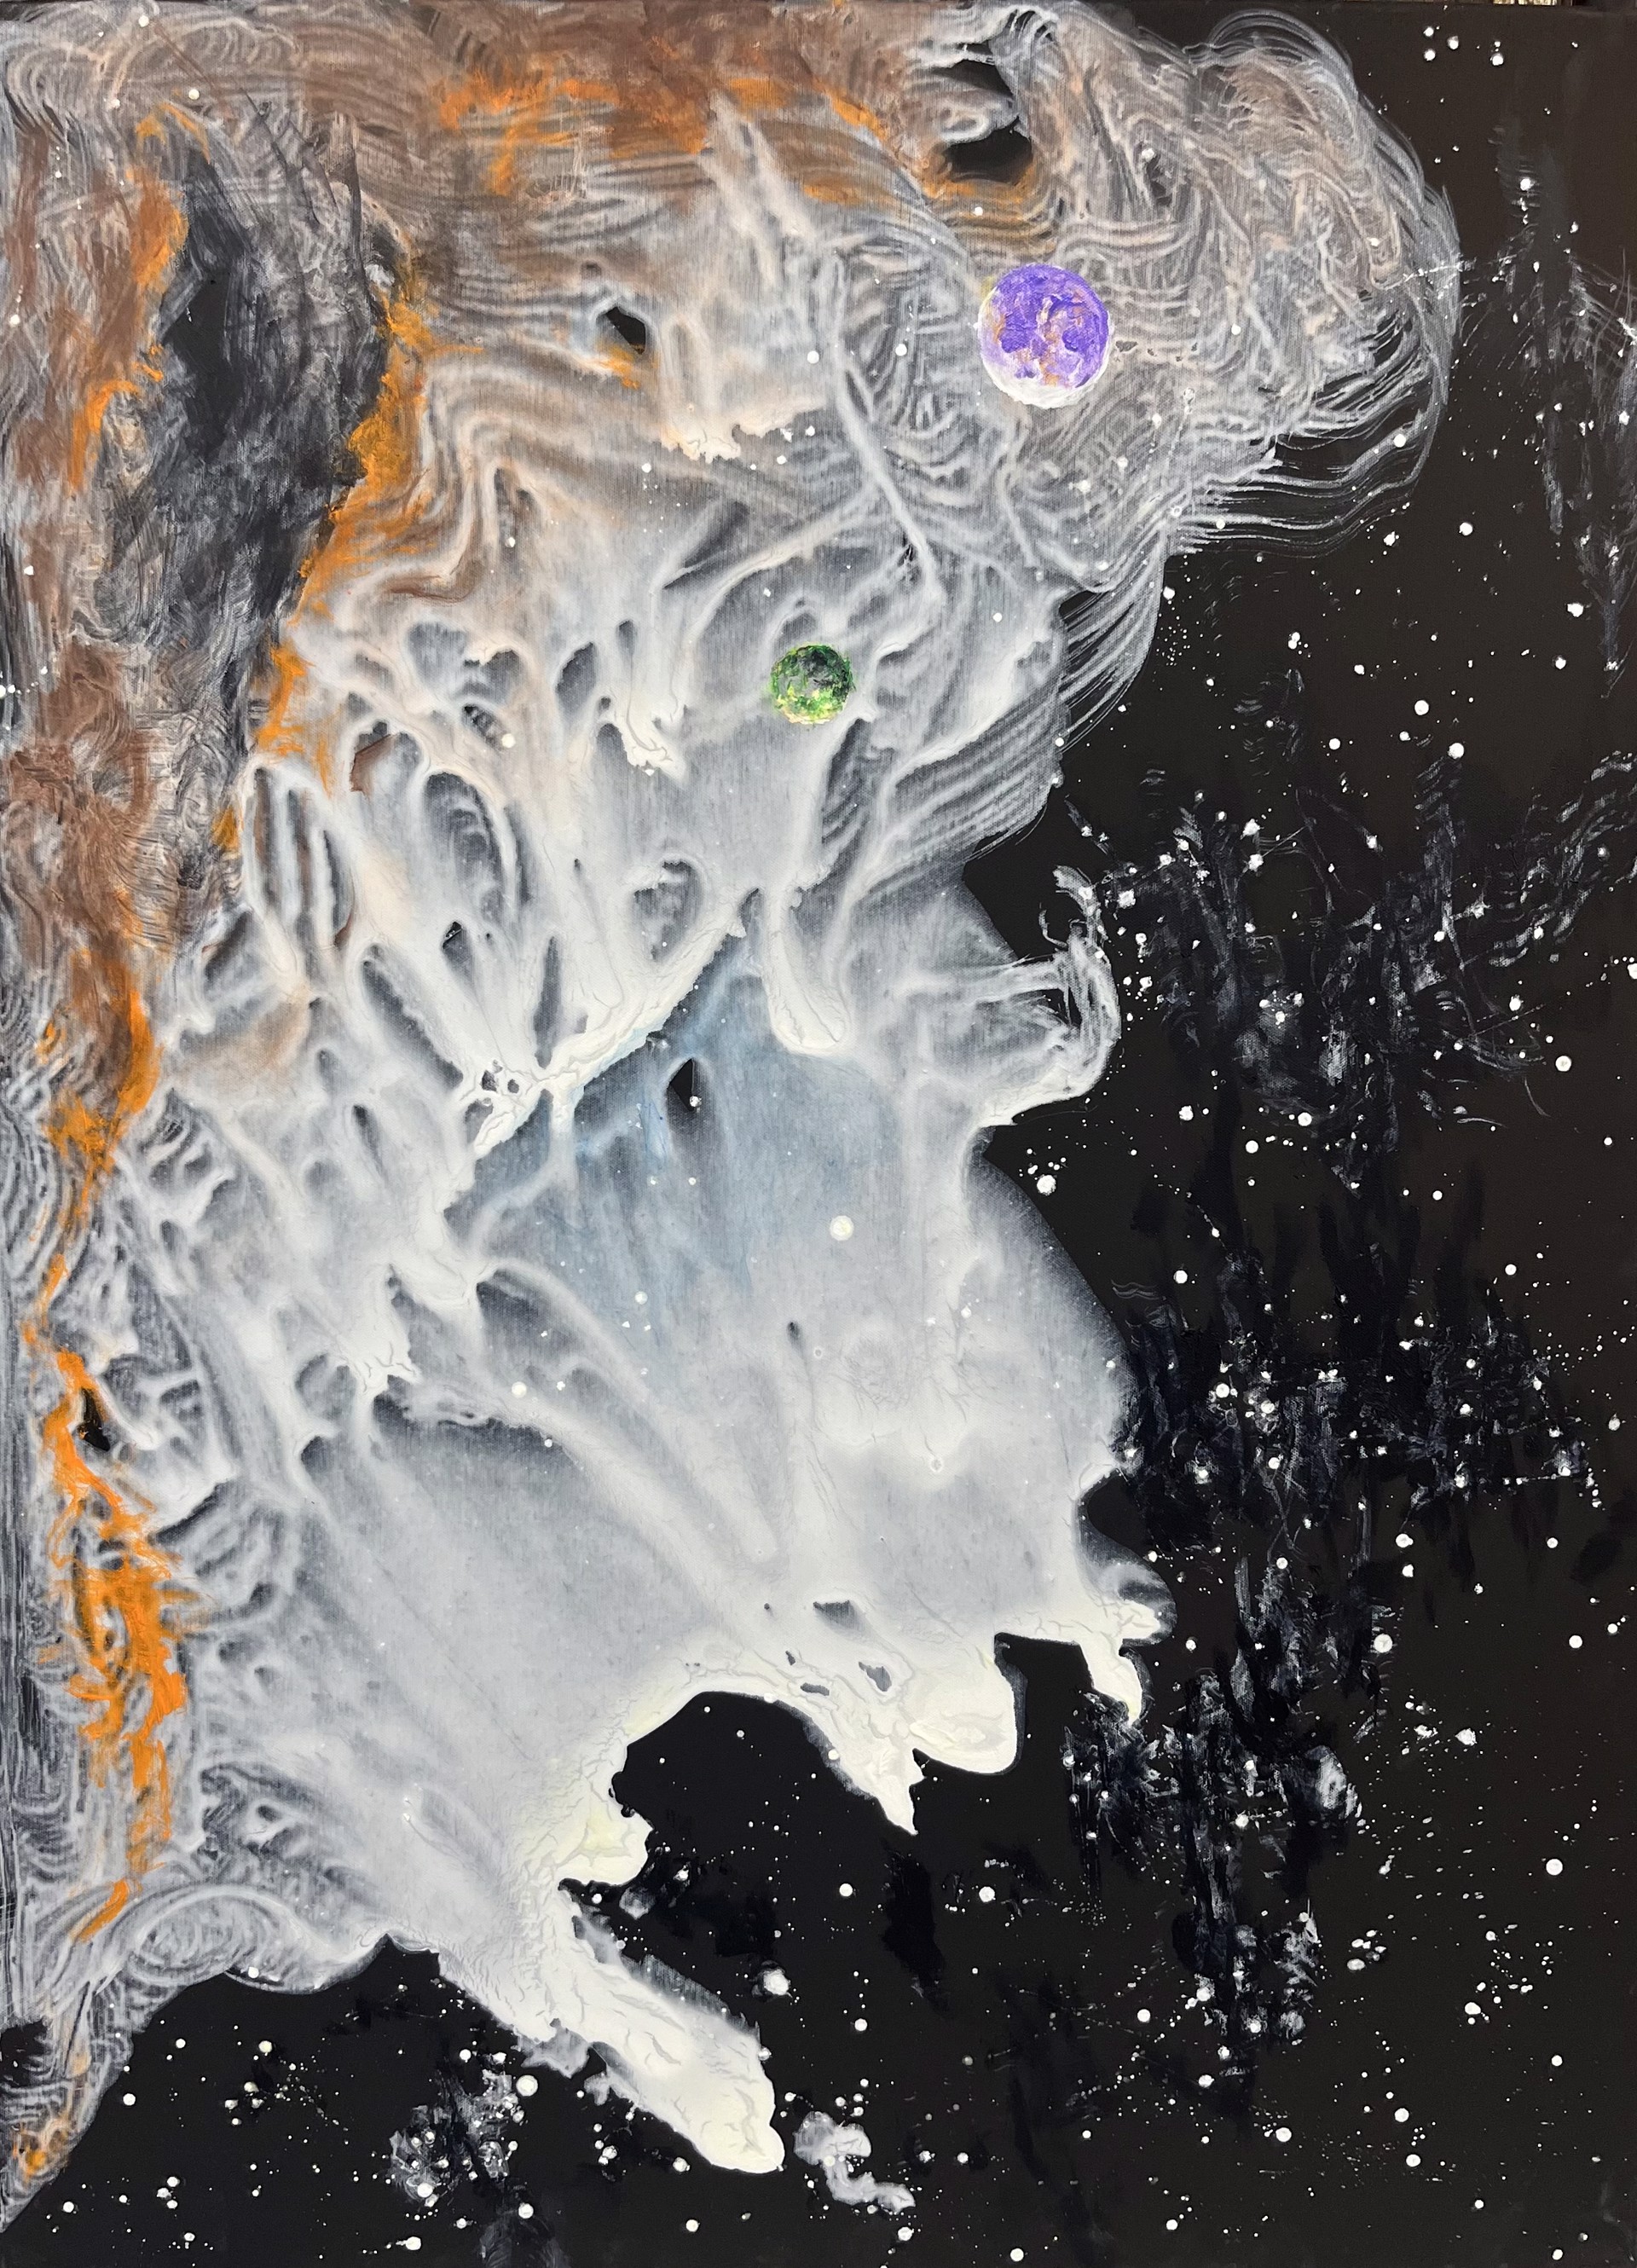 Nebula's I've Known by Gregory Vick